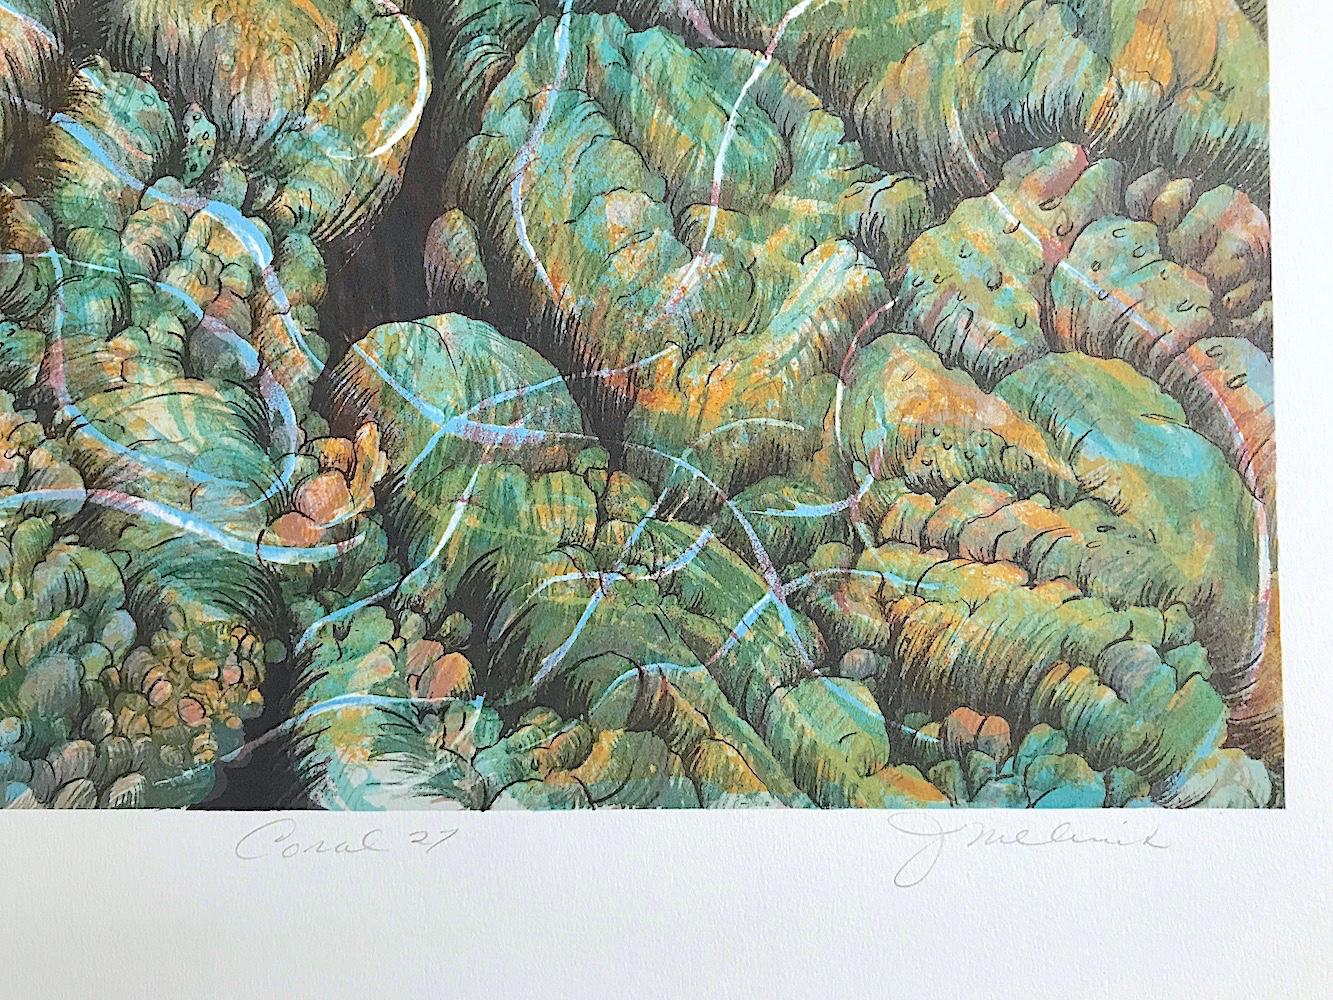 Koralle 27: Aqua, Gelb, signierte Lithographie, Abstrakte Natur, Korallenriff, Wasser (Grau), Abstract Print, von Joan Melnick